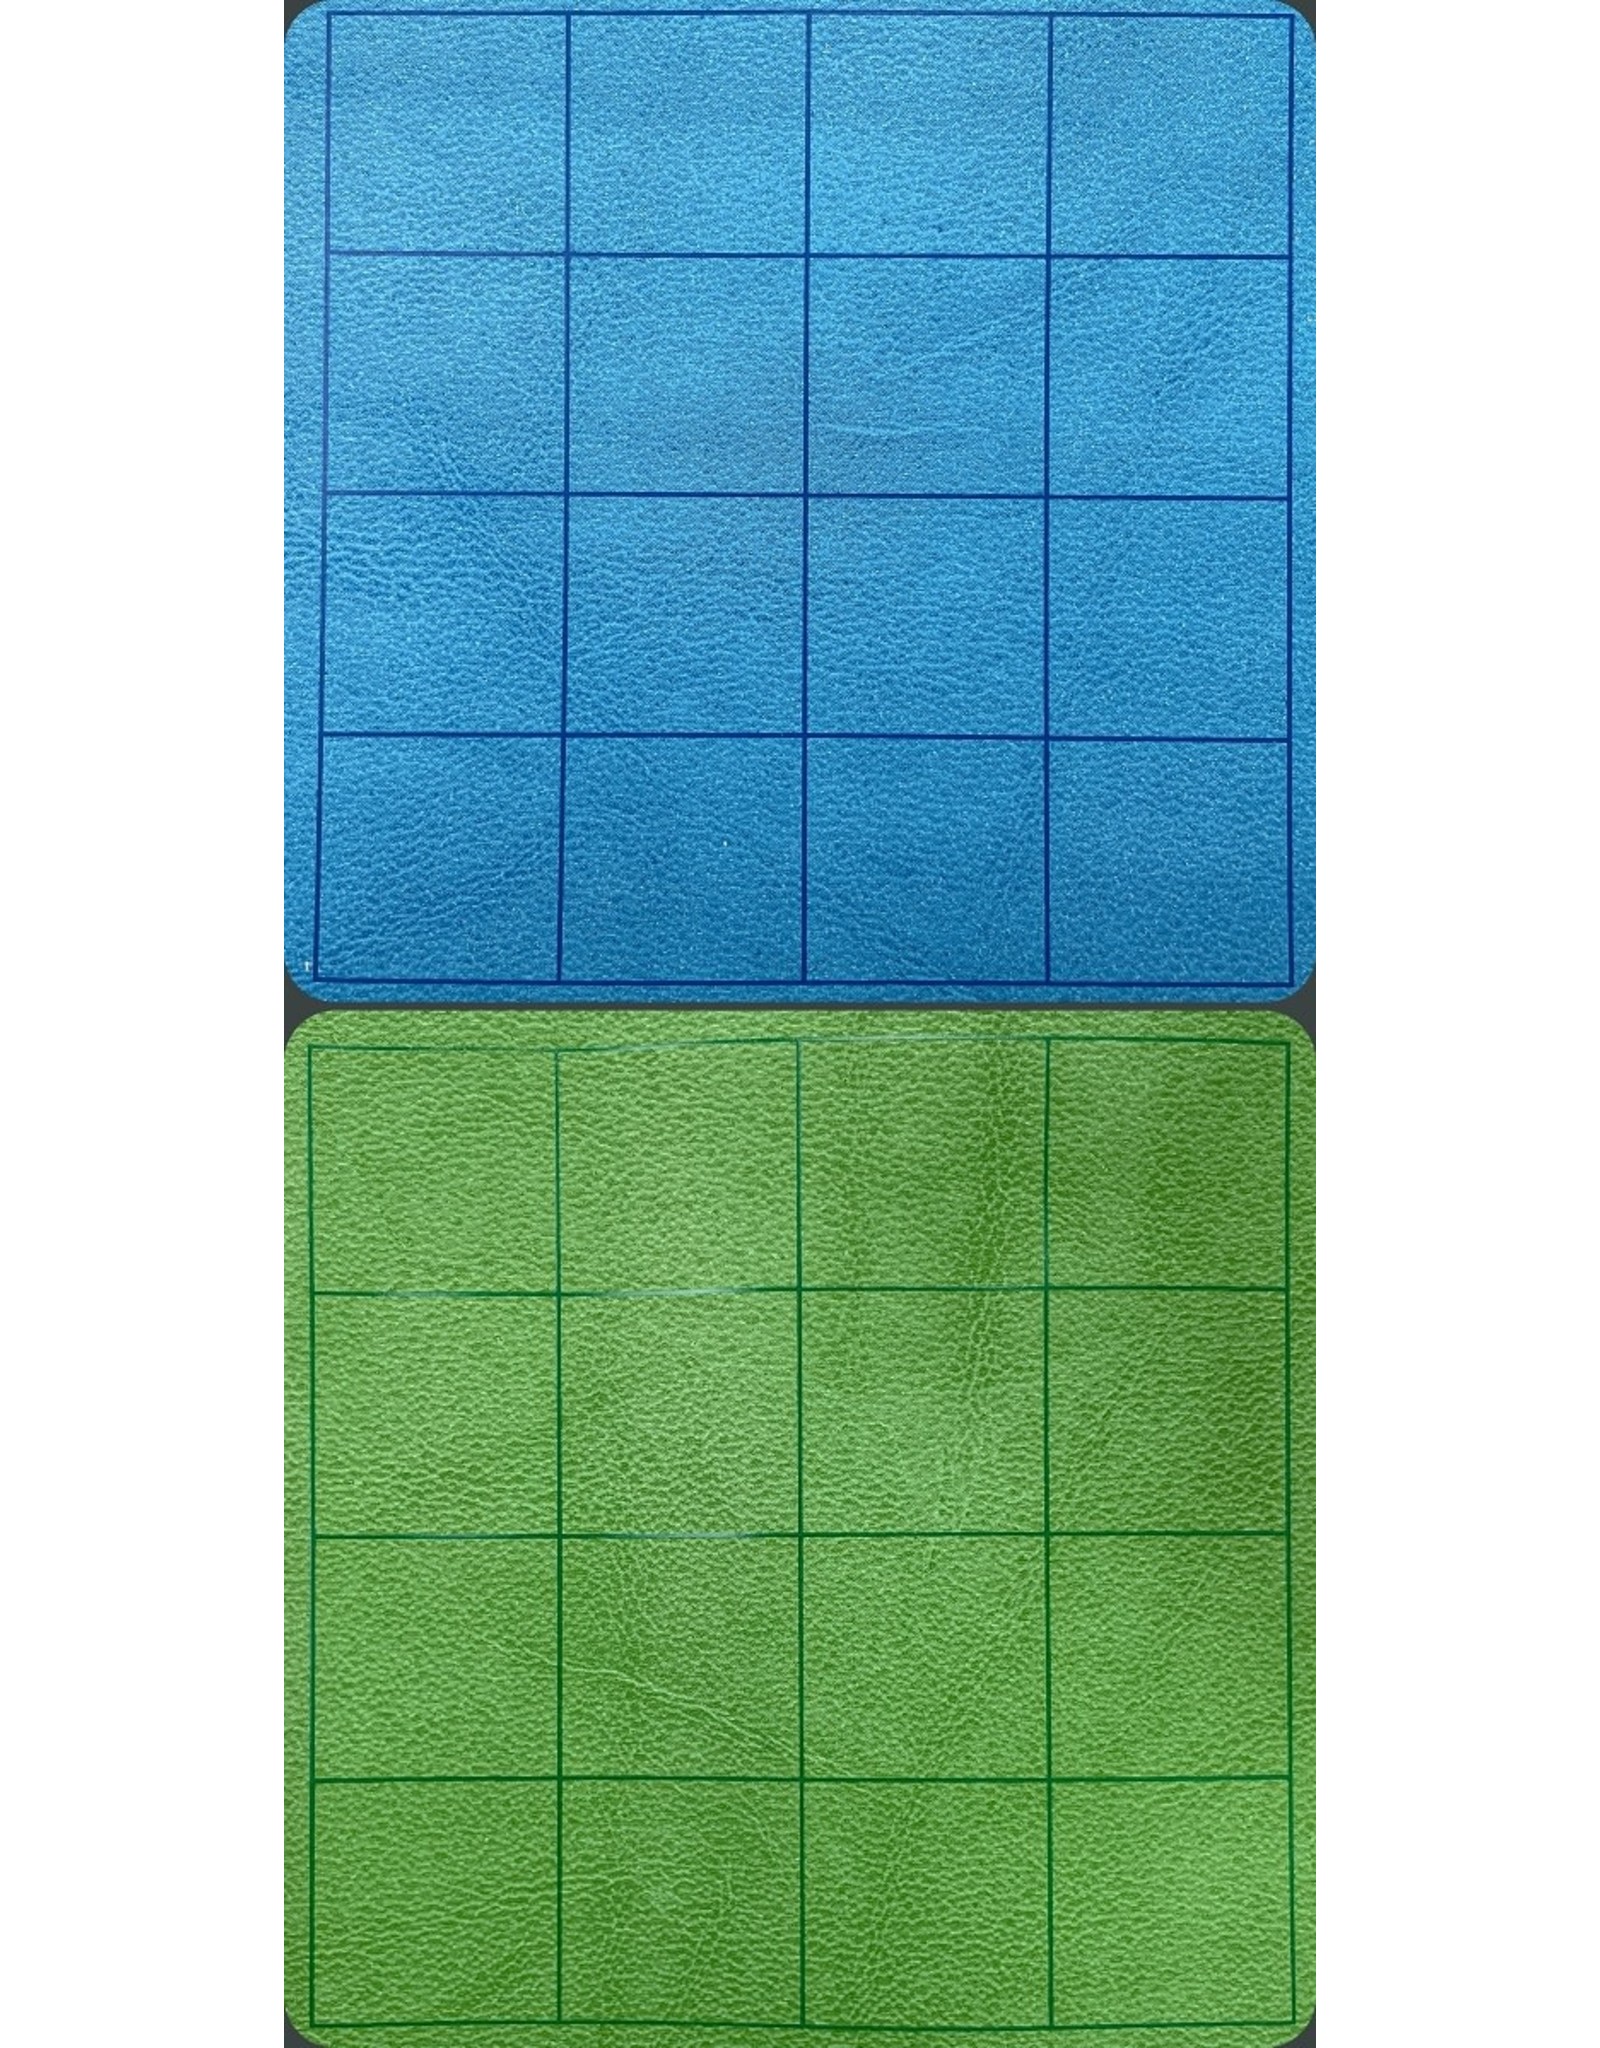 Megamat 1" Square 34.5"x48" Reversible -